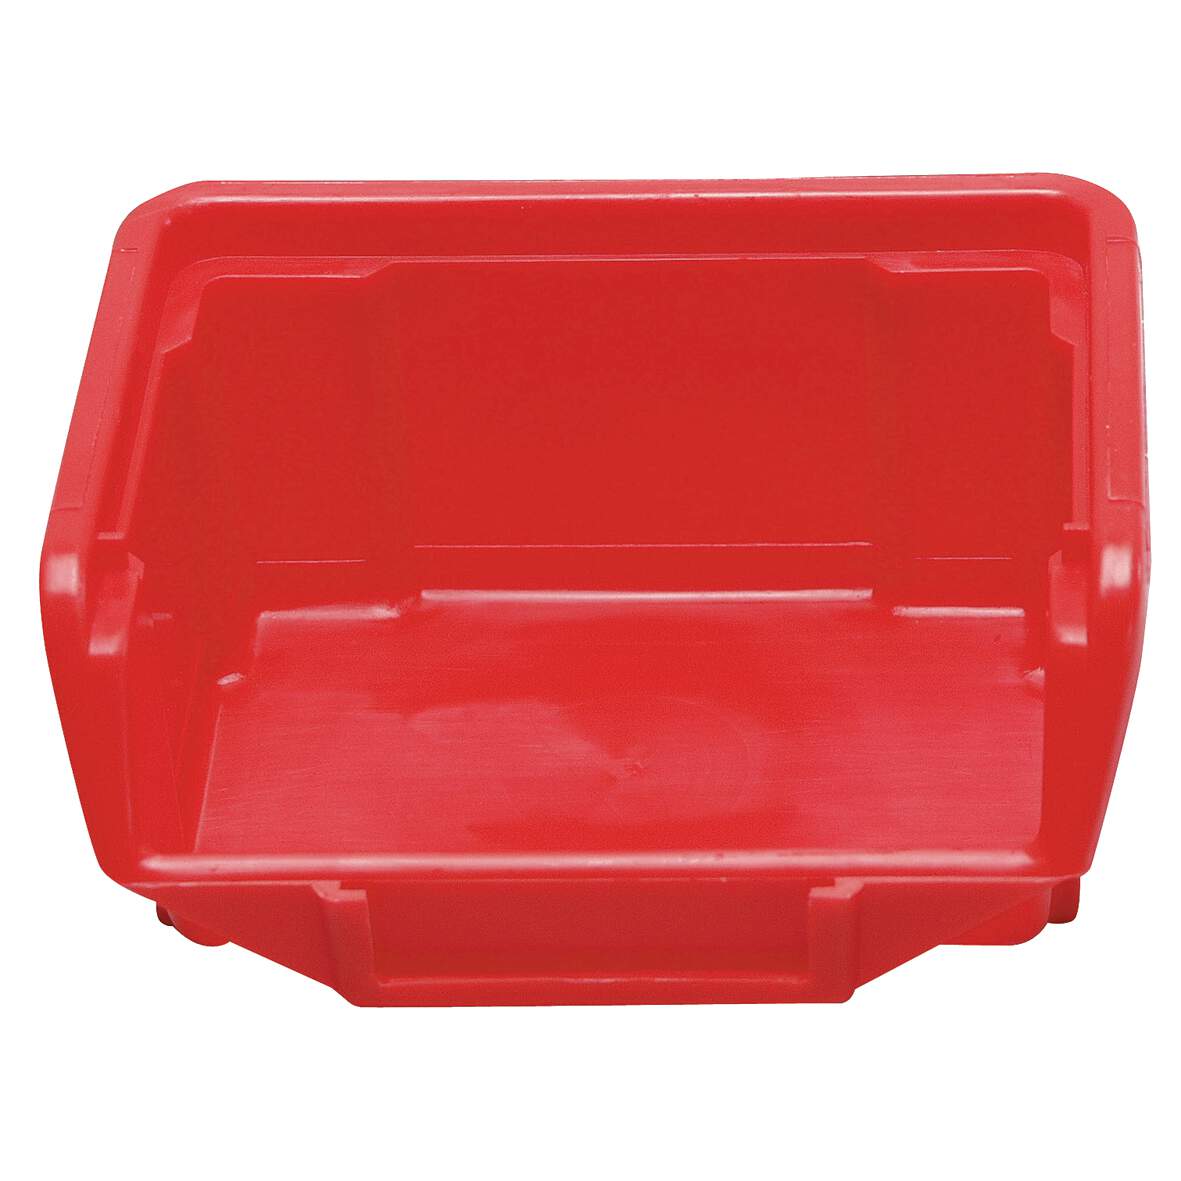 1032518 - Stapelbox rot Größe 2